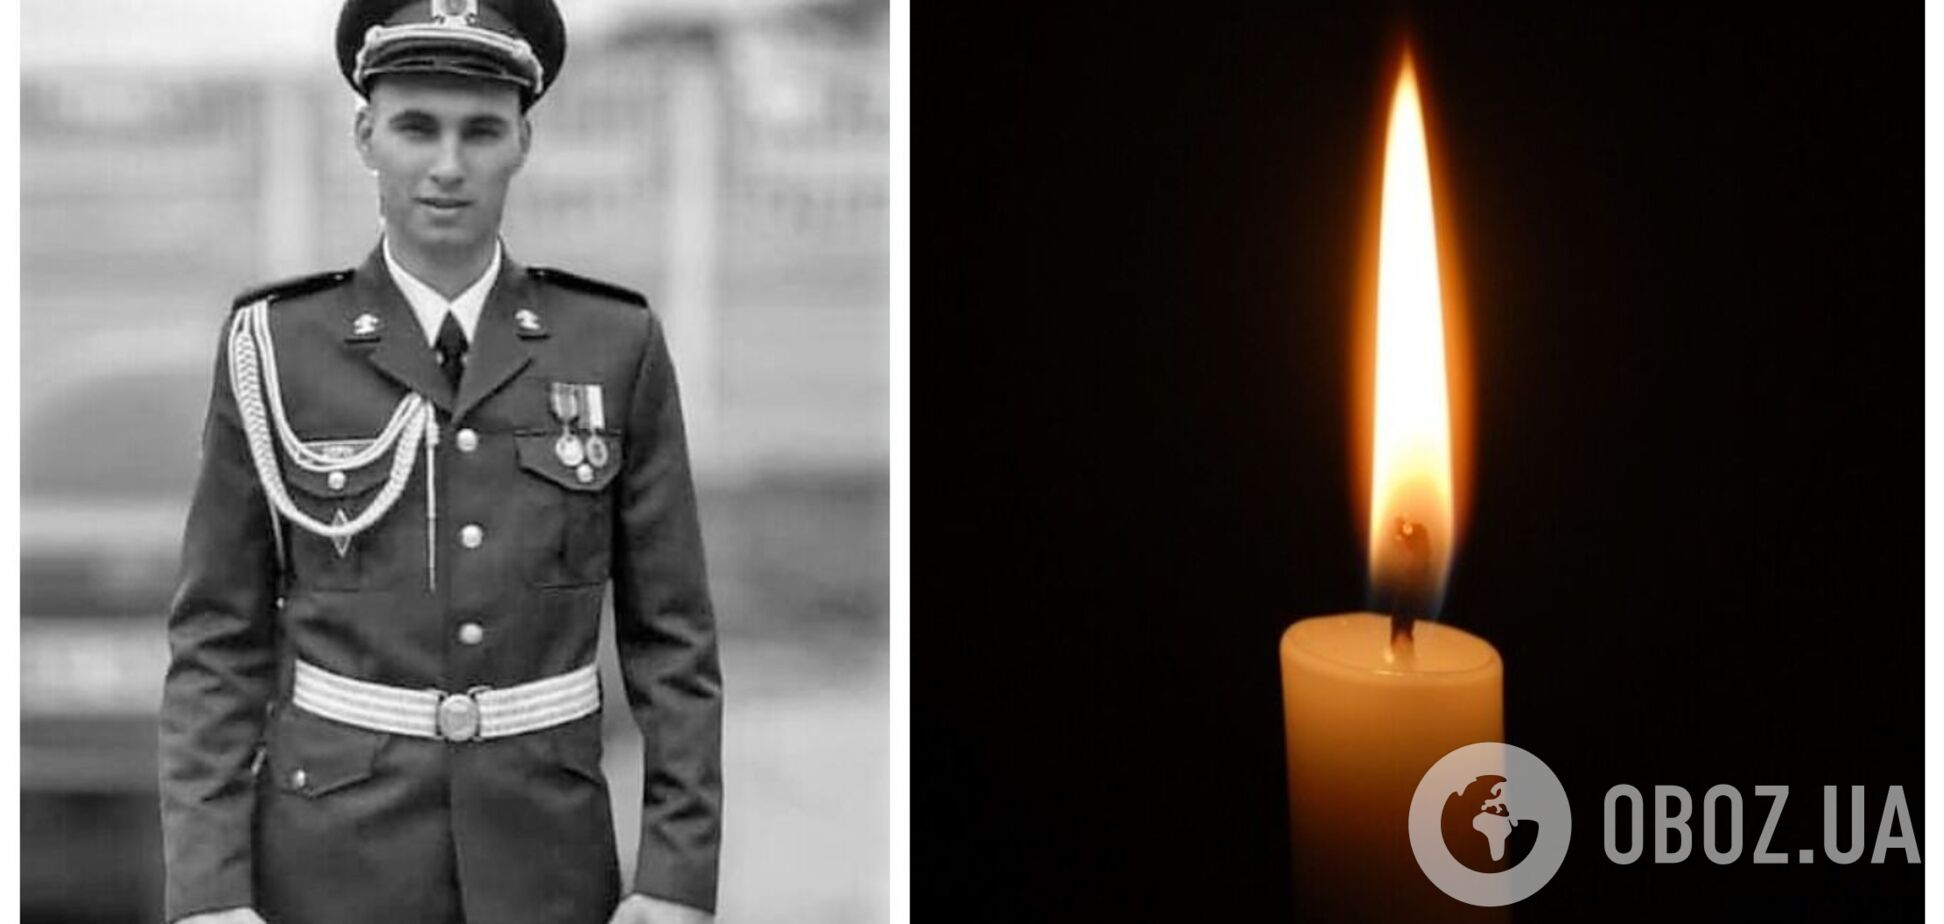 Названо имя бойца ВСУ, который подорвался на Донбассе: ему было 23 года. Фото